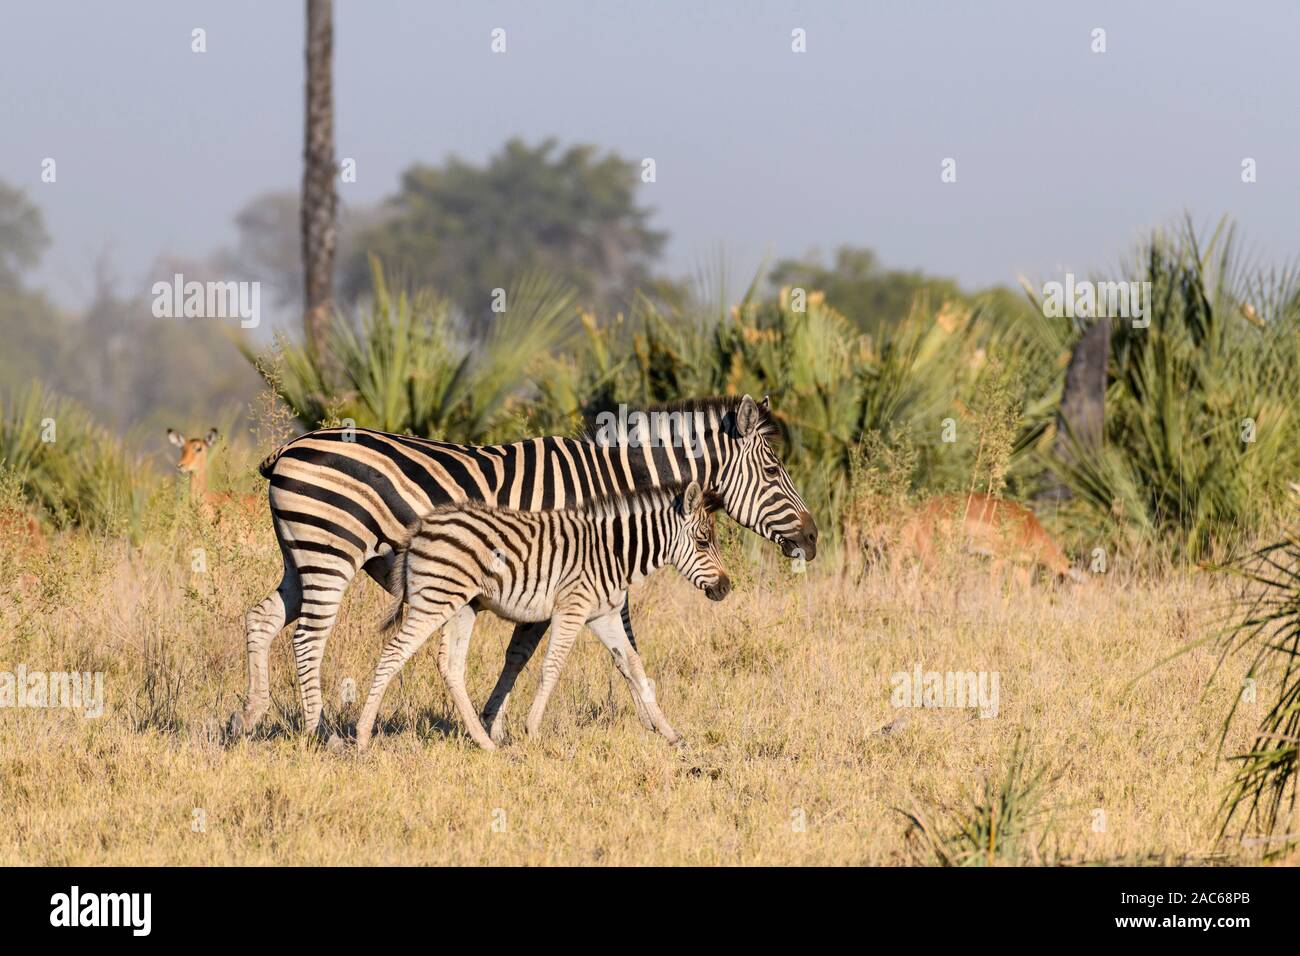 Zèbre de Burchell, Equus quagga burchellii, mère et fair, Macatoo, Delta d'Okavango, Botswana. Également connu sous le nom de Plaines ou de zèbre commune Banque D'Images